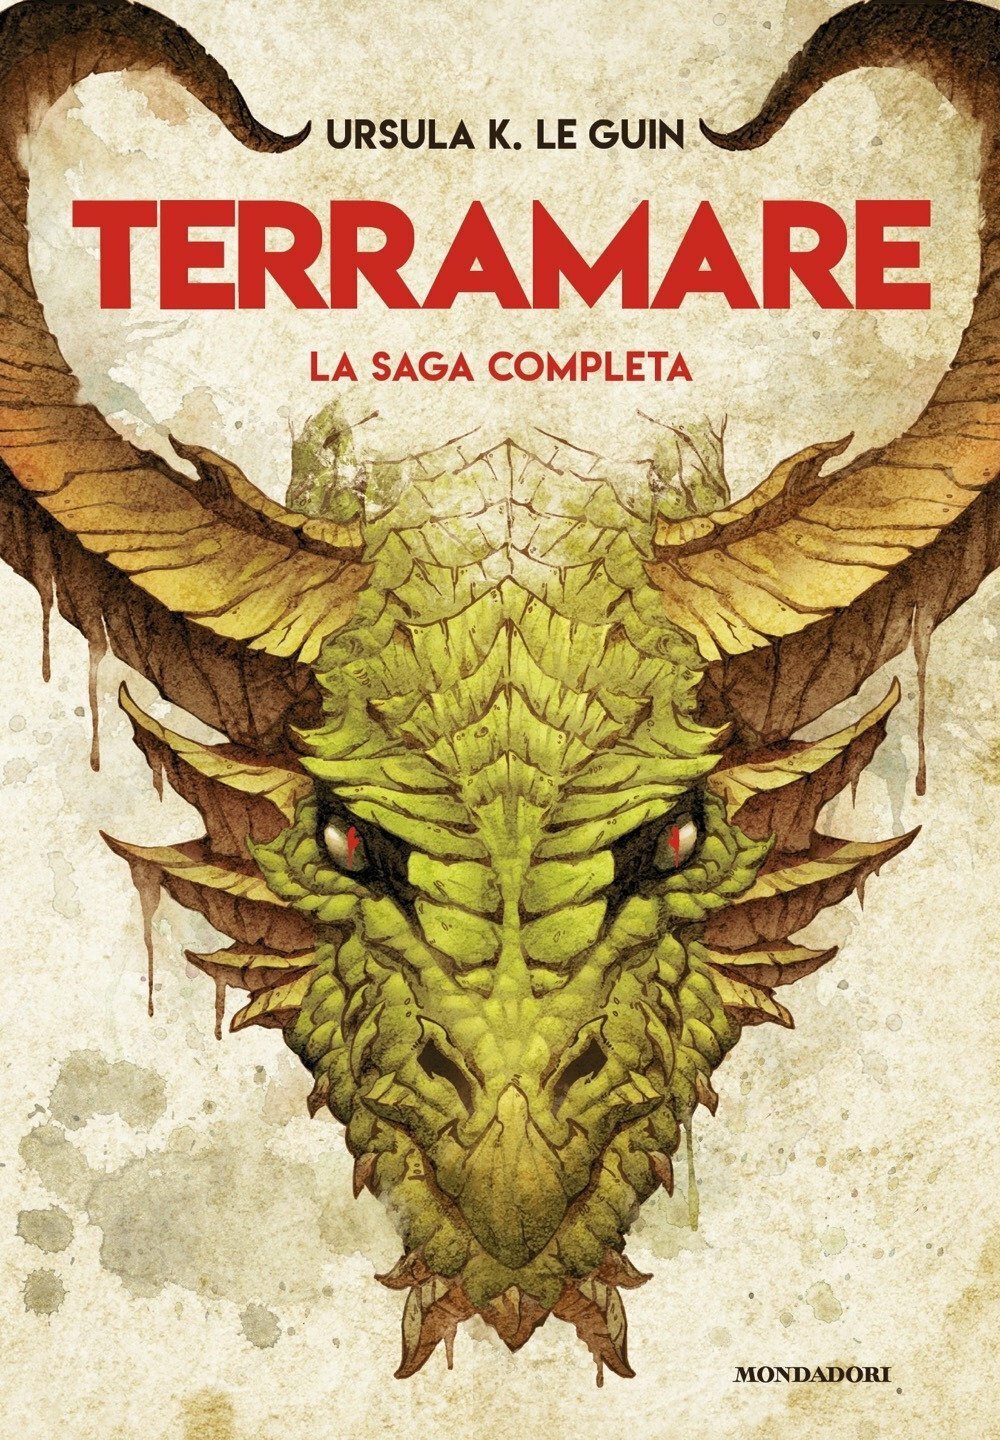 La copertina del volume edito da Mondadori che raccoglie la saga completa di Terramare